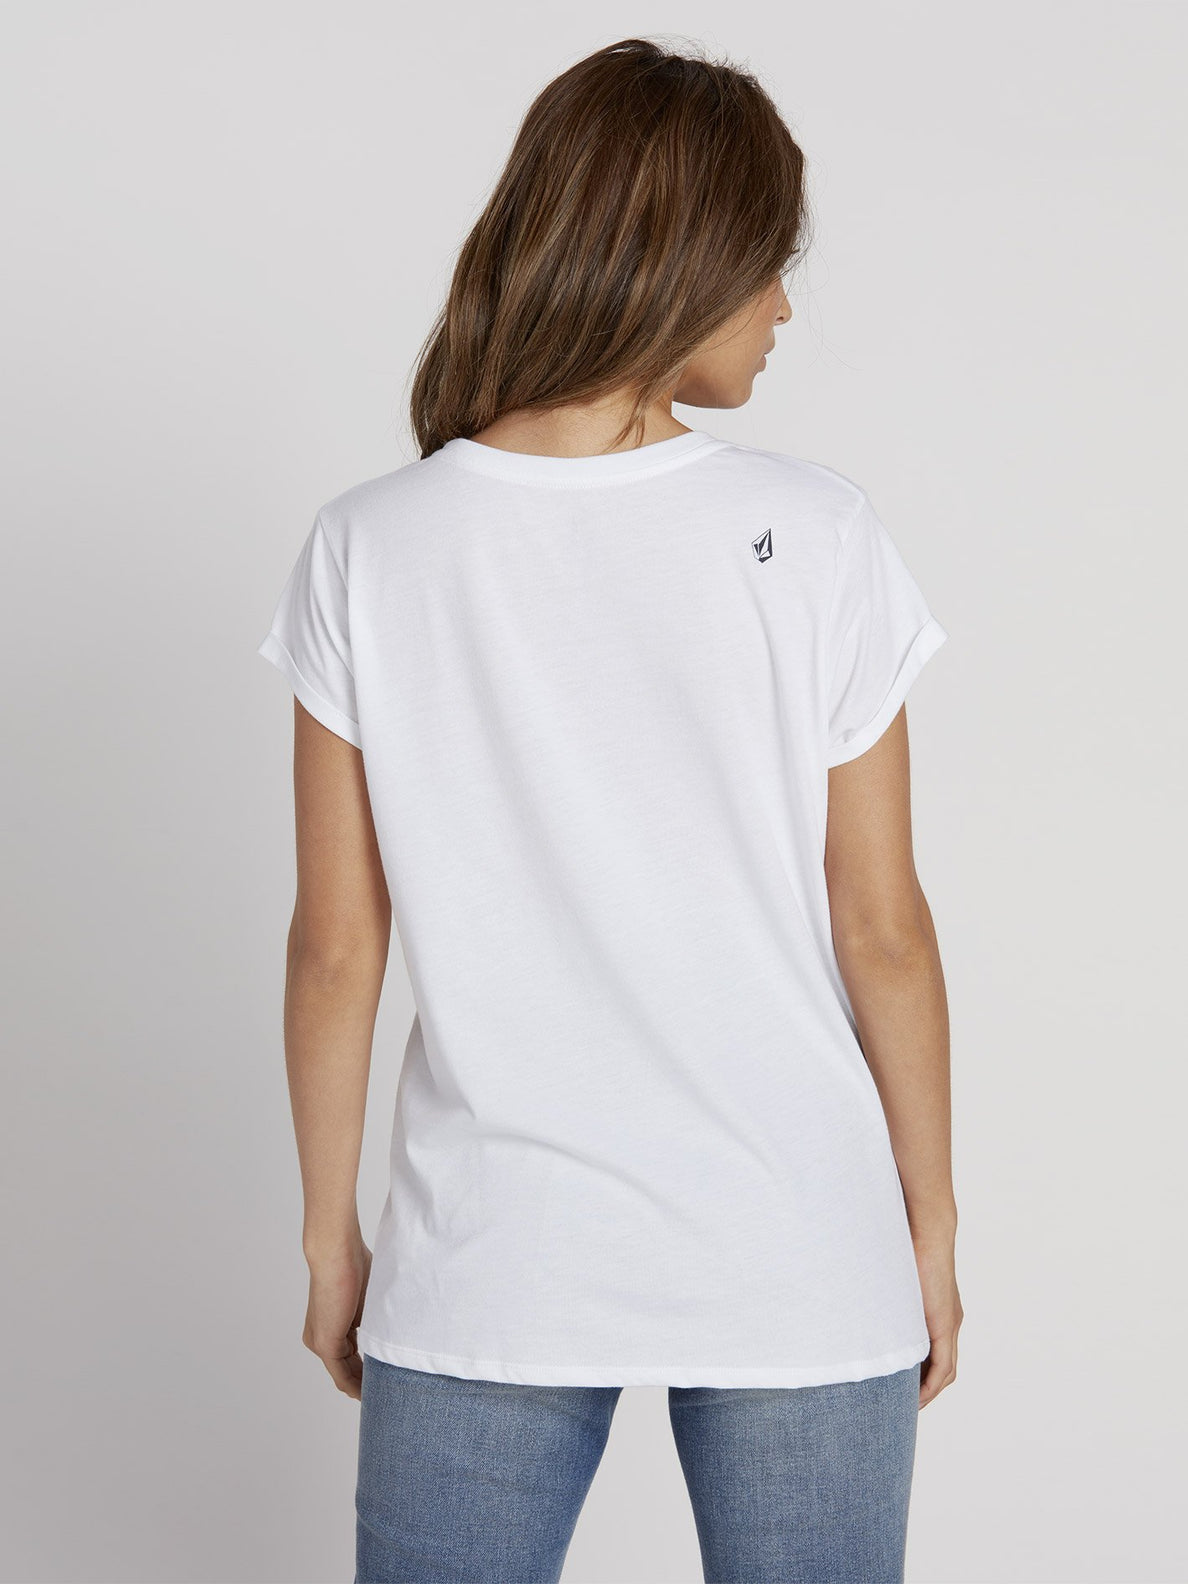 Radical Daze T-shirt - White (B3531950_WHT) [B]